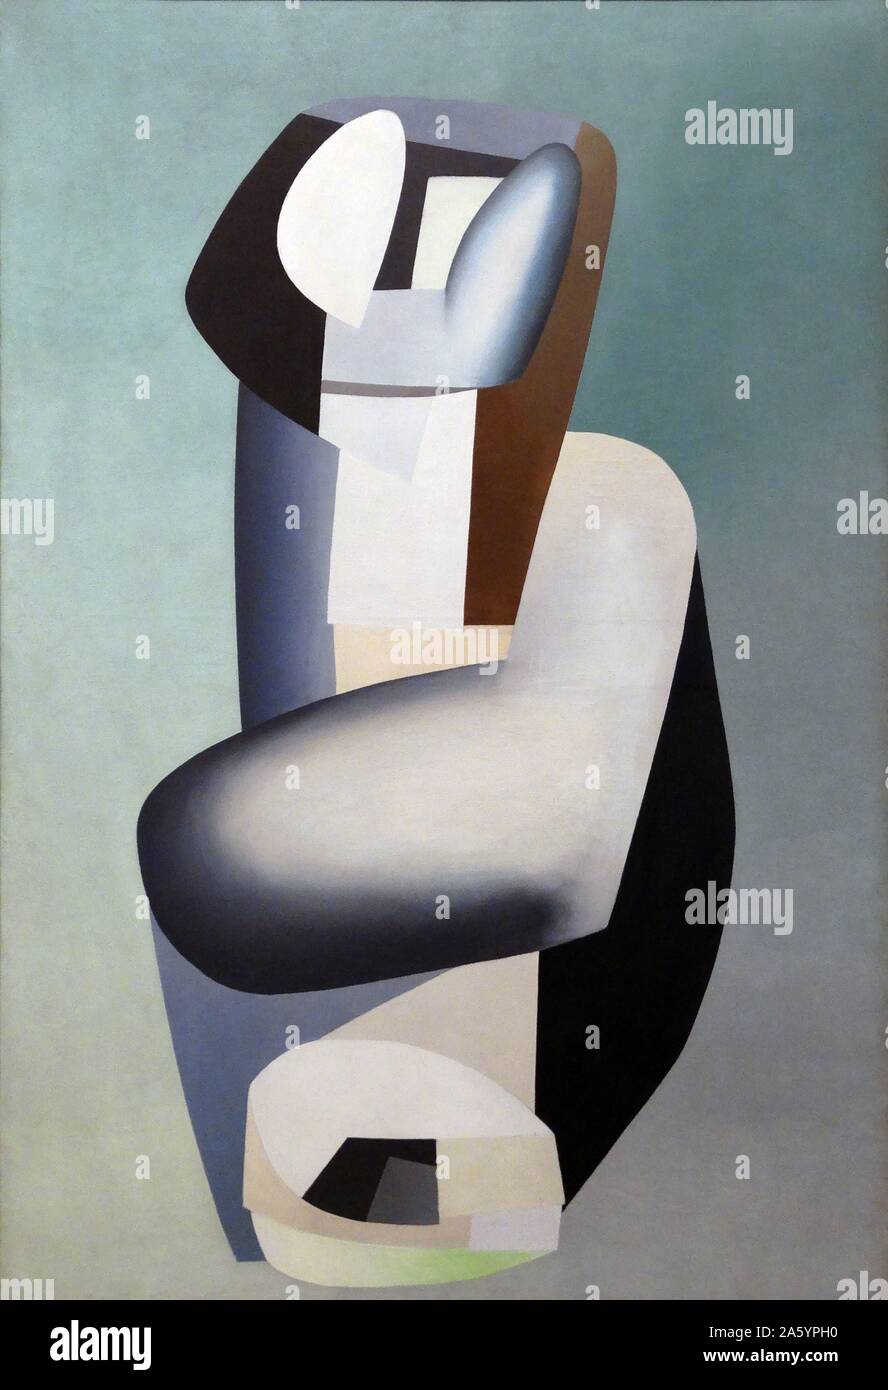 Abbildung Bleue von Jean Hélion (1904-1987). Öl auf Leinwand, 1935. Hélion war ein französischer Maler, dessen abstrakte Arbeit in den 1930er Jahren half, ihn als führenden Modernist herzustellen. Stockfoto